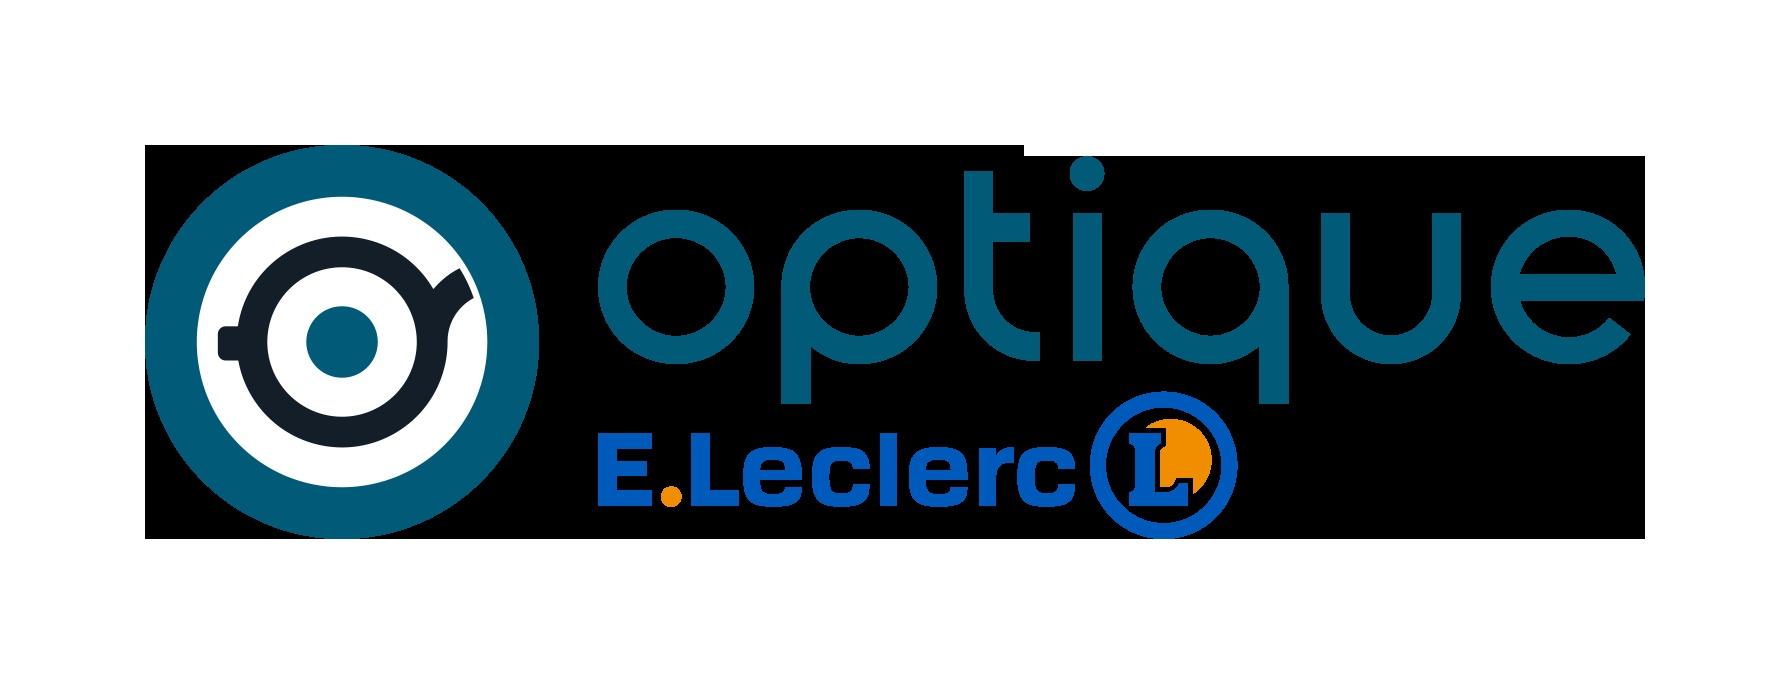 E.leclerc Optique Lisieux